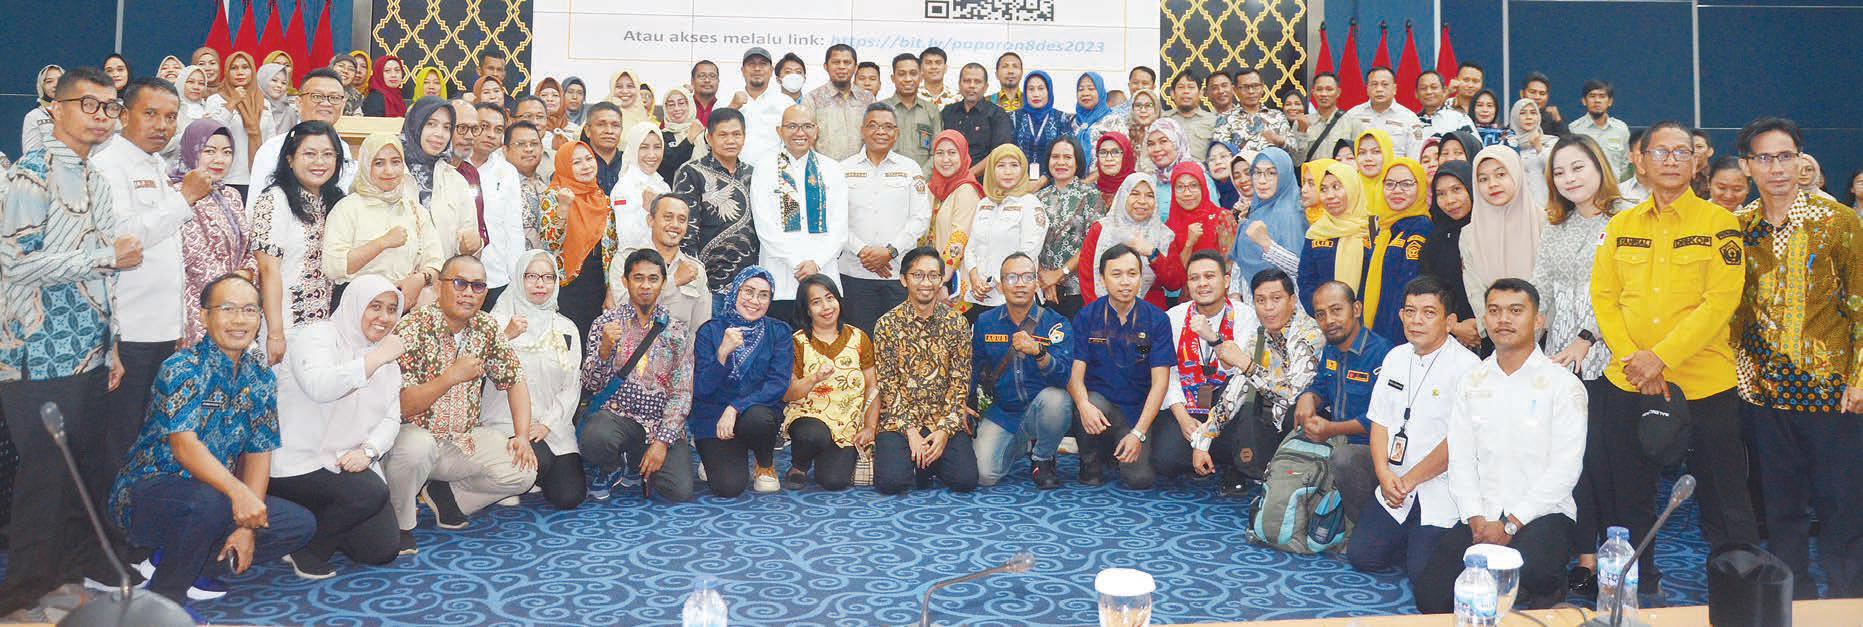 Foto bersama jajaran Bappeda Sultra dan Bappeda DKI Jakarta.